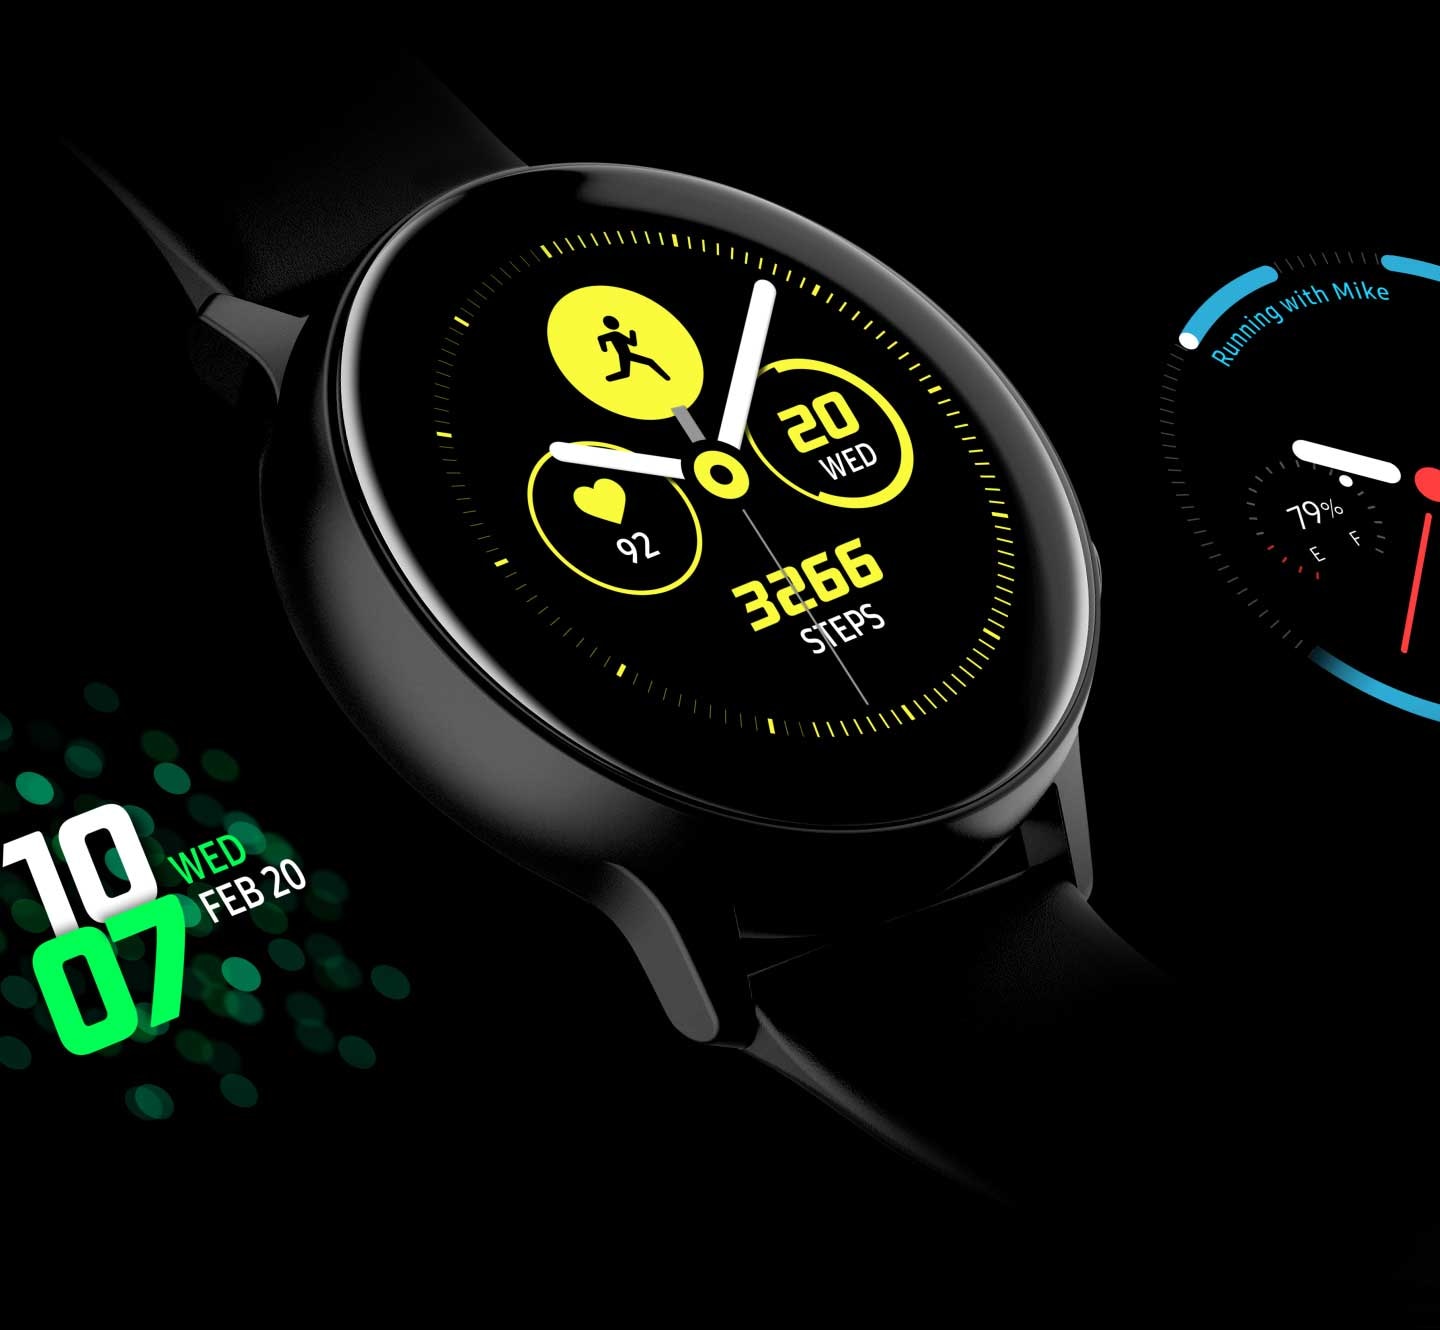 Zegarek dla aktywnych - Galaxy Watch Active daje Ci możliwość personalizacji tarcz, które będą nie tylko funkcjonalne, ale także wyrażą Twój styl